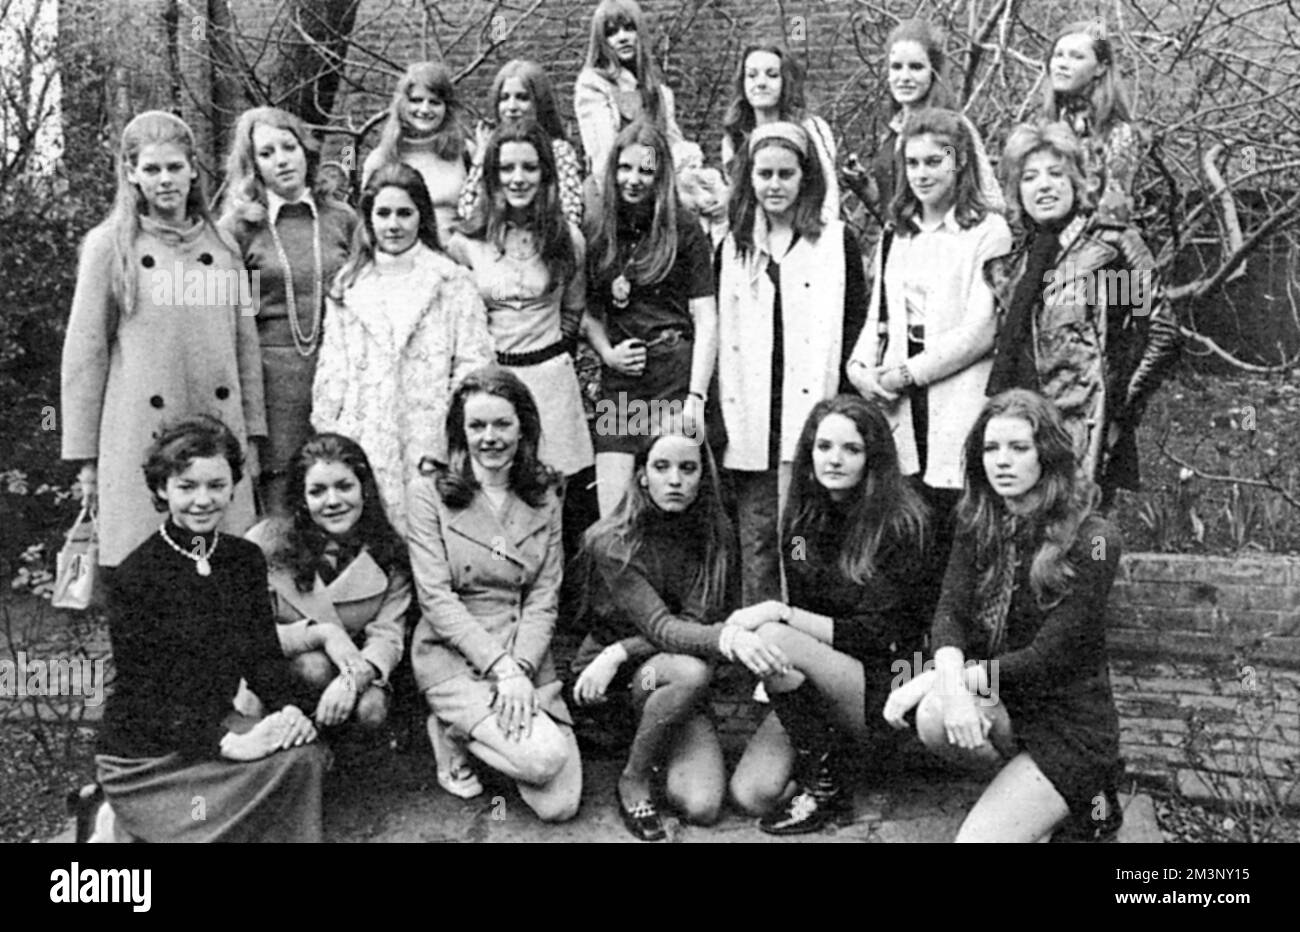 Eine Gruppe von zwanzig Mädchen, die aus 200 hoffnungsvollen Personen ausgewählt wurden, um an der Eröffnungsveranstaltung der Londoner Saison teilzunehmen, der Berkeley Dress Show (früher Berkeley Debutante Dress Show), die im April 1970 stattfindet. Datum: 1970 Stockfoto